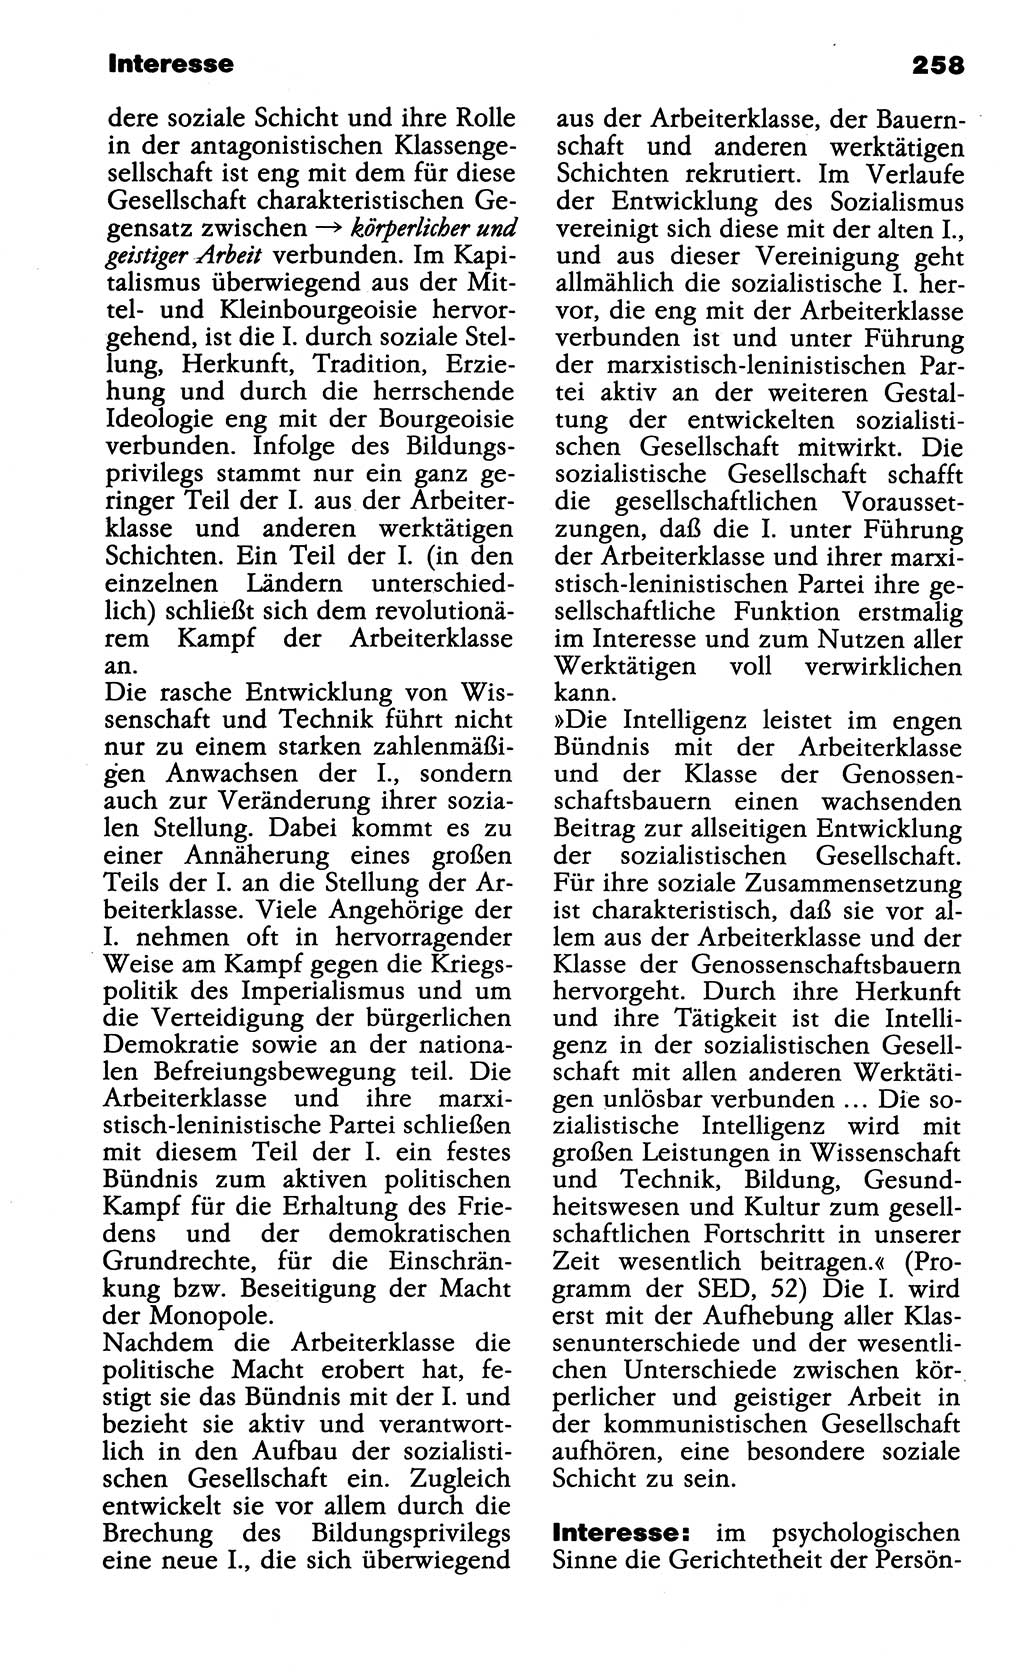 Wörterbuch der marxistisch-leninistischen Philosophie [Deutsche Demokratische Republik (DDR)] 1985, Seite 258 (Wb. ML Phil. DDR 1985, S. 258)